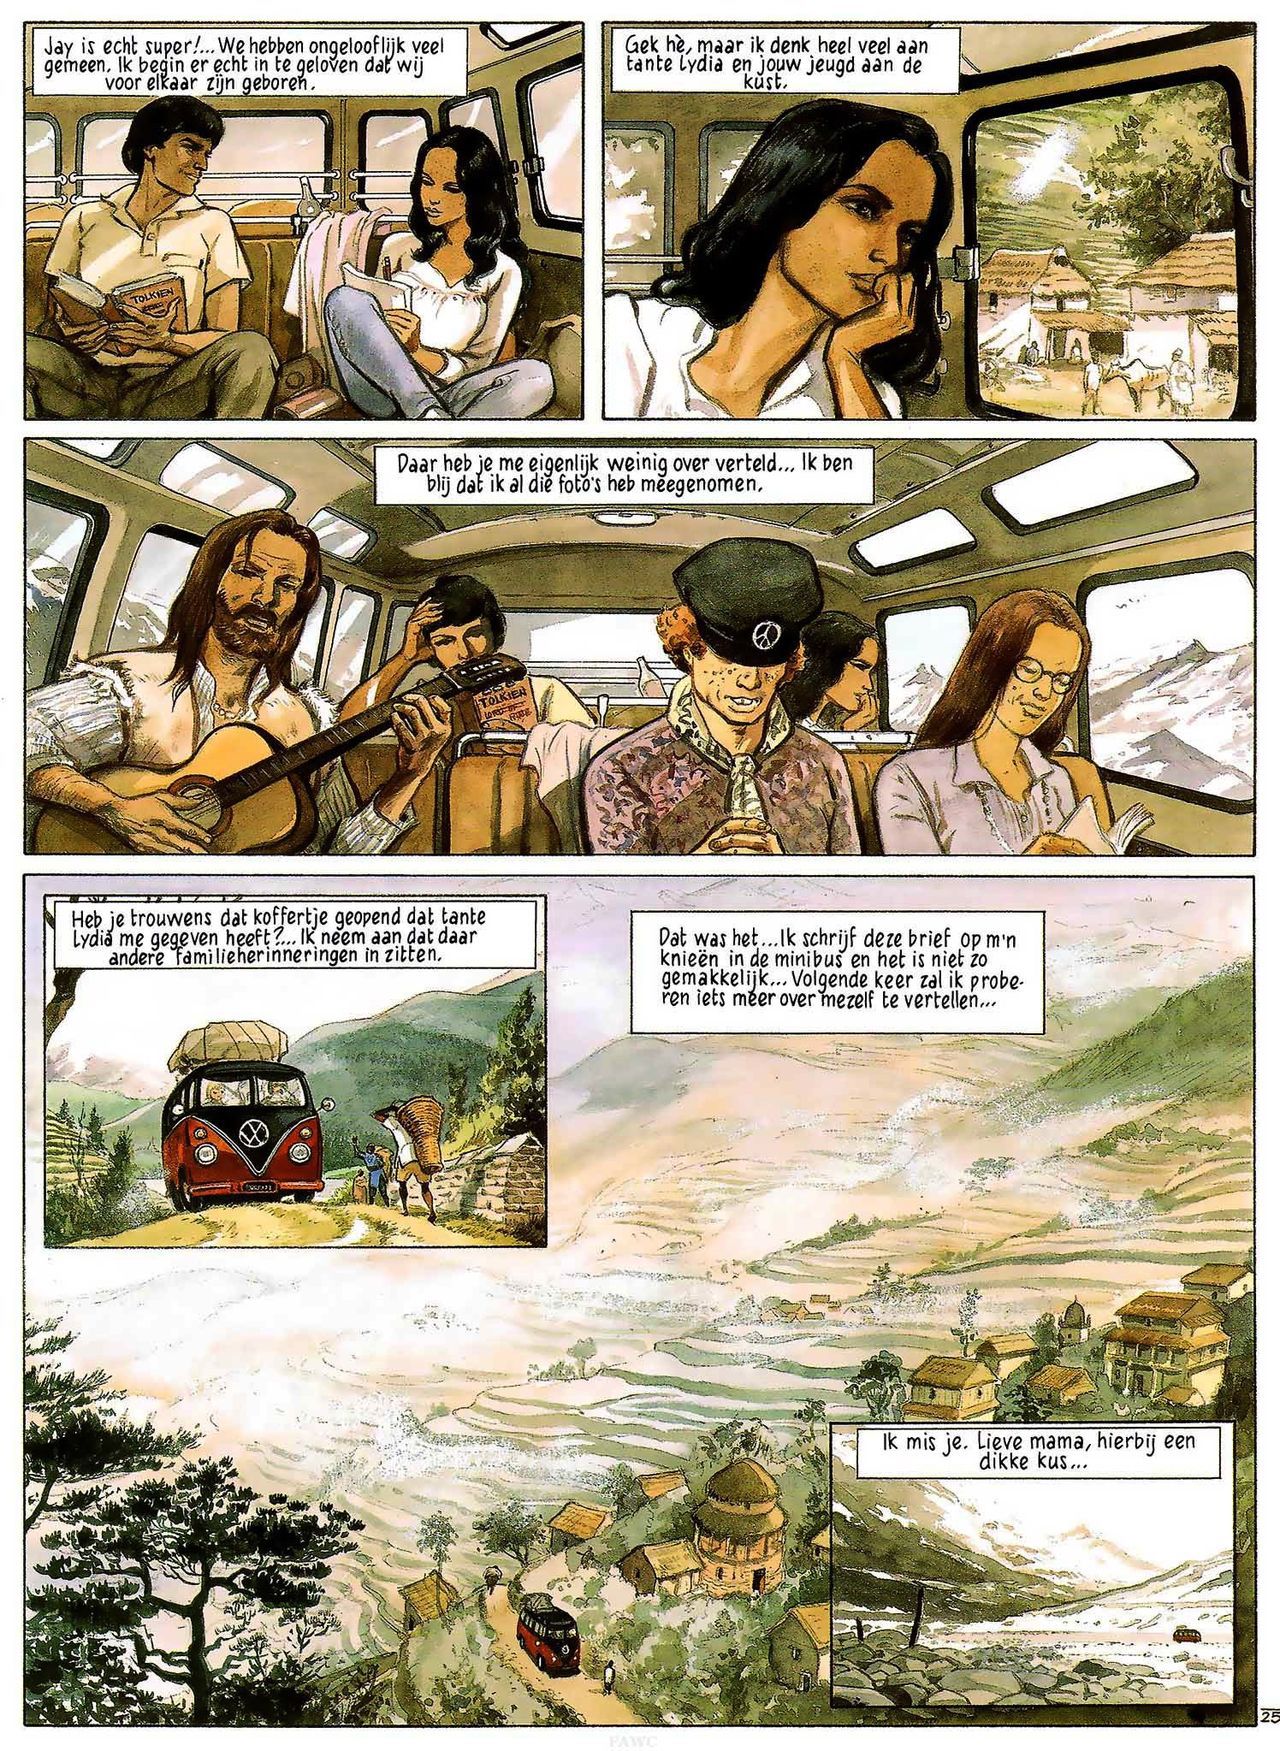 India Dreams - 03 - In De Schaduw Van De Bougainvilles (Dutch) Engelstalige en Duitse strips die op deze site staan, hier is de Nederlandse uitgave! 27